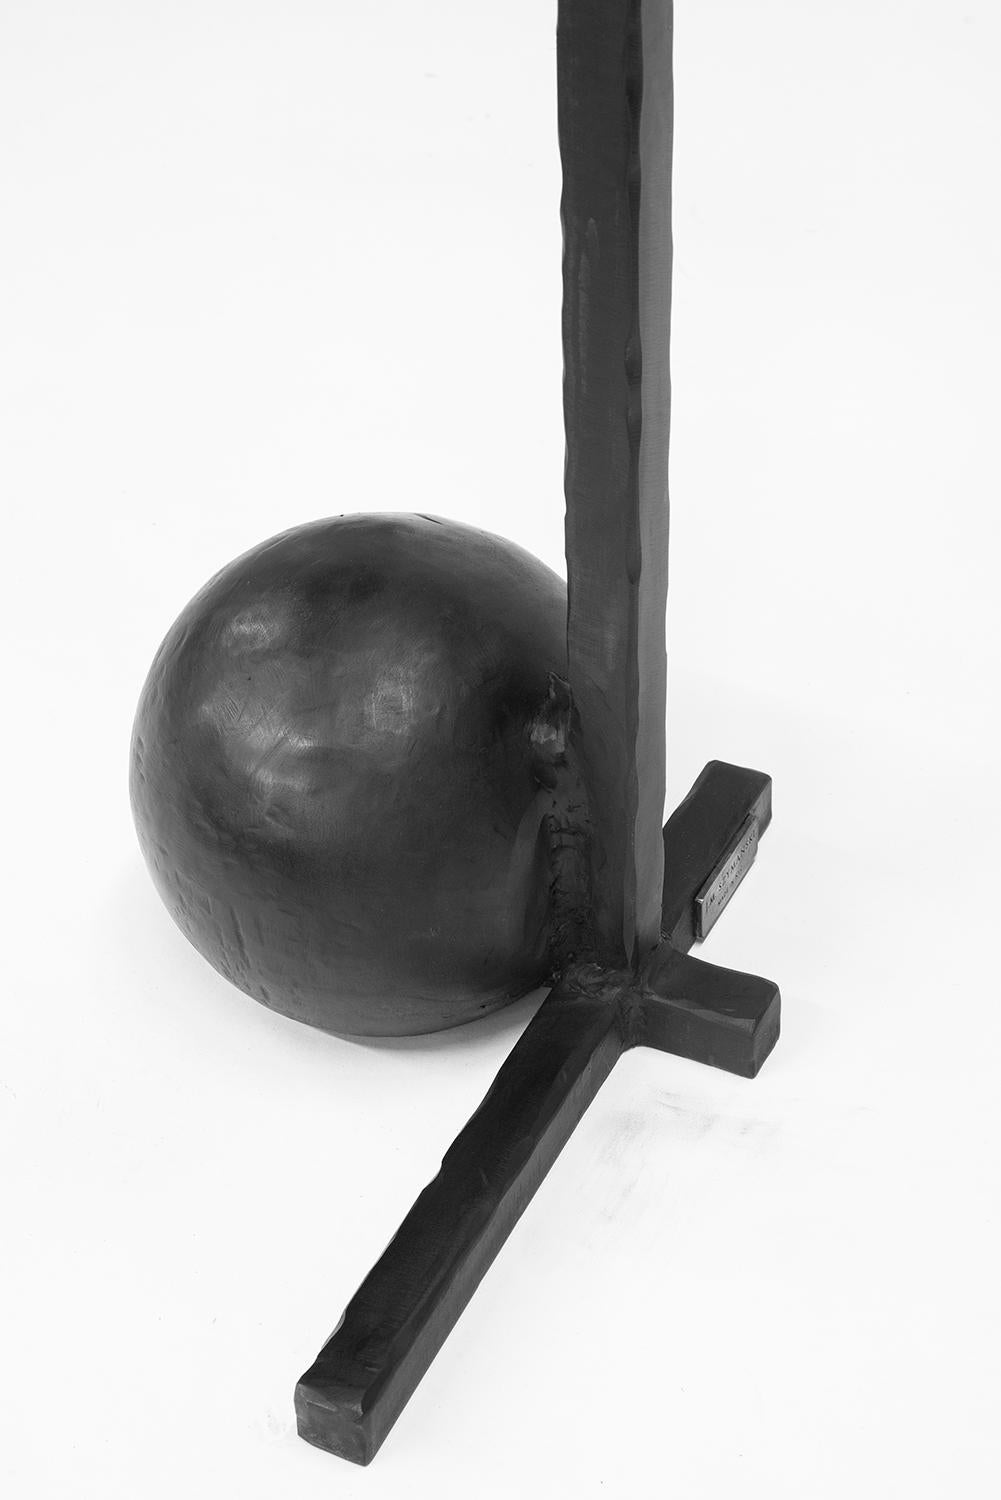 Coat Rack Sculptural Modern Spherical Geometric Handmade Carved Blackened Steel For Sale 3